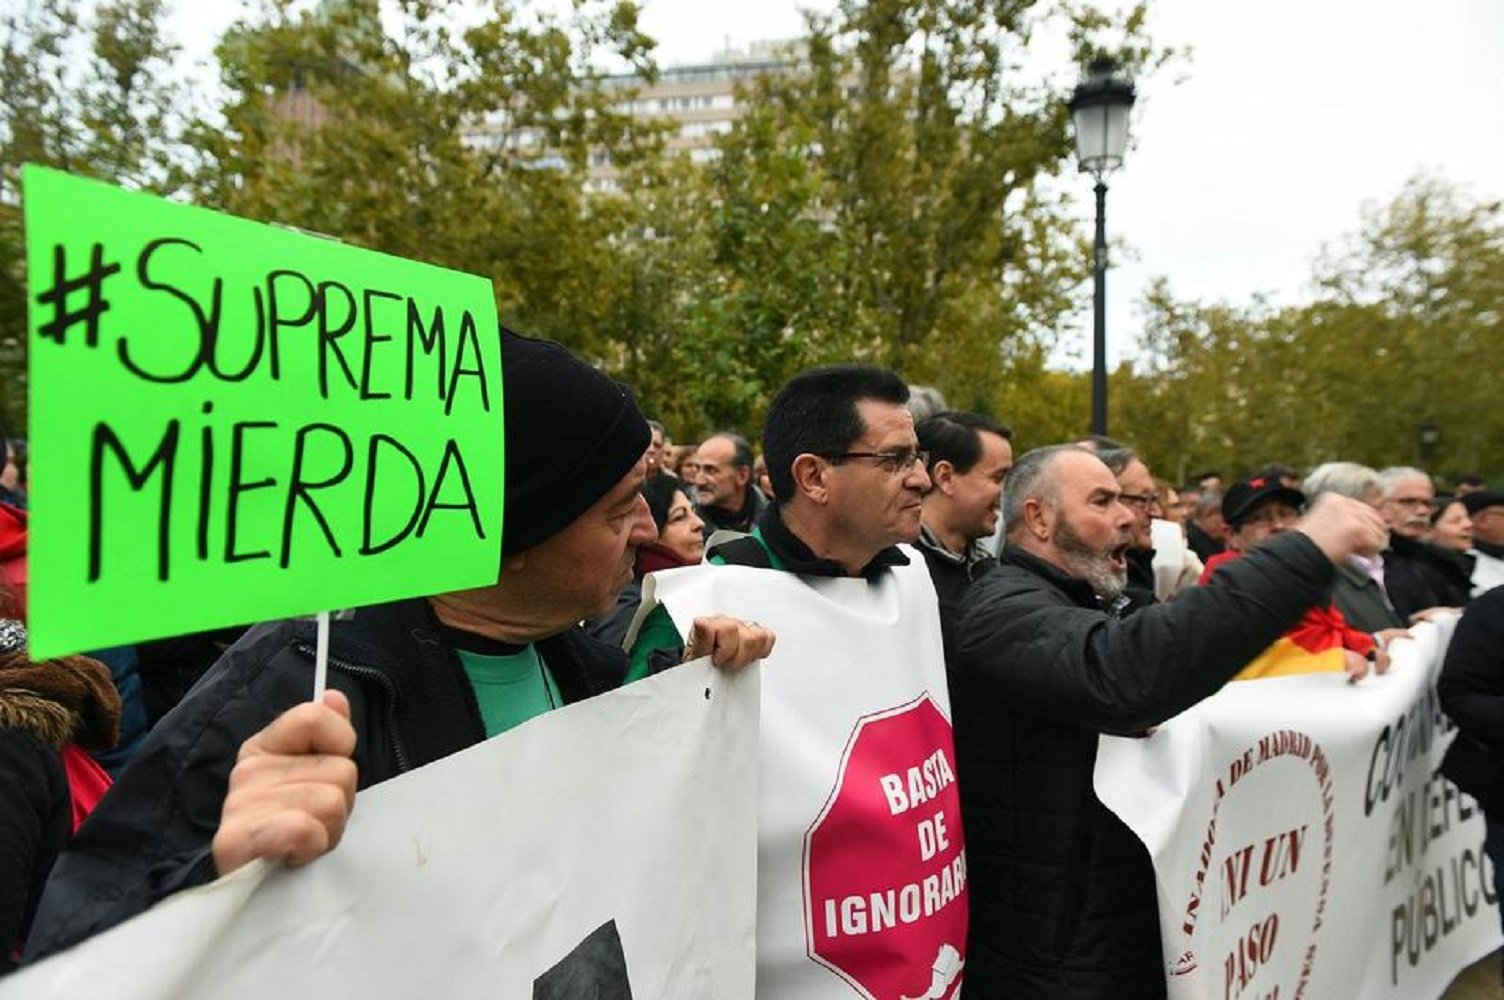 Cent organitzacions de tot l’Estat denunciaran a Madrid que “no hi ha justícia”